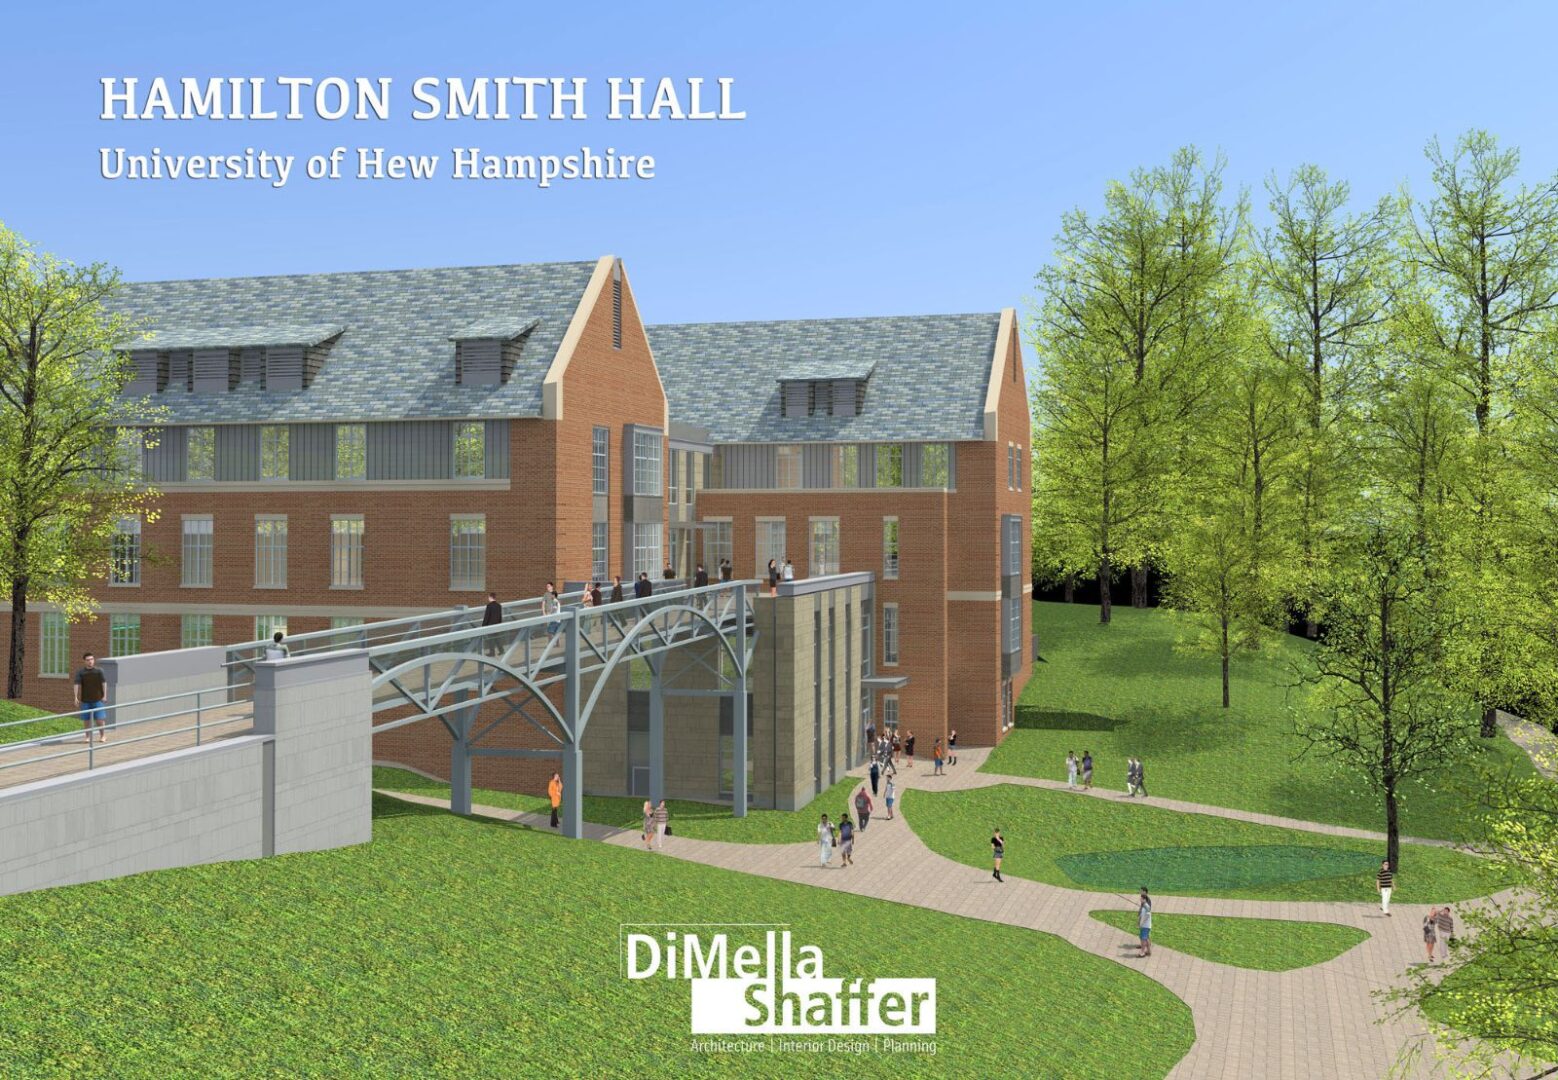 Hamilton Smith hall, University of New Hampshire